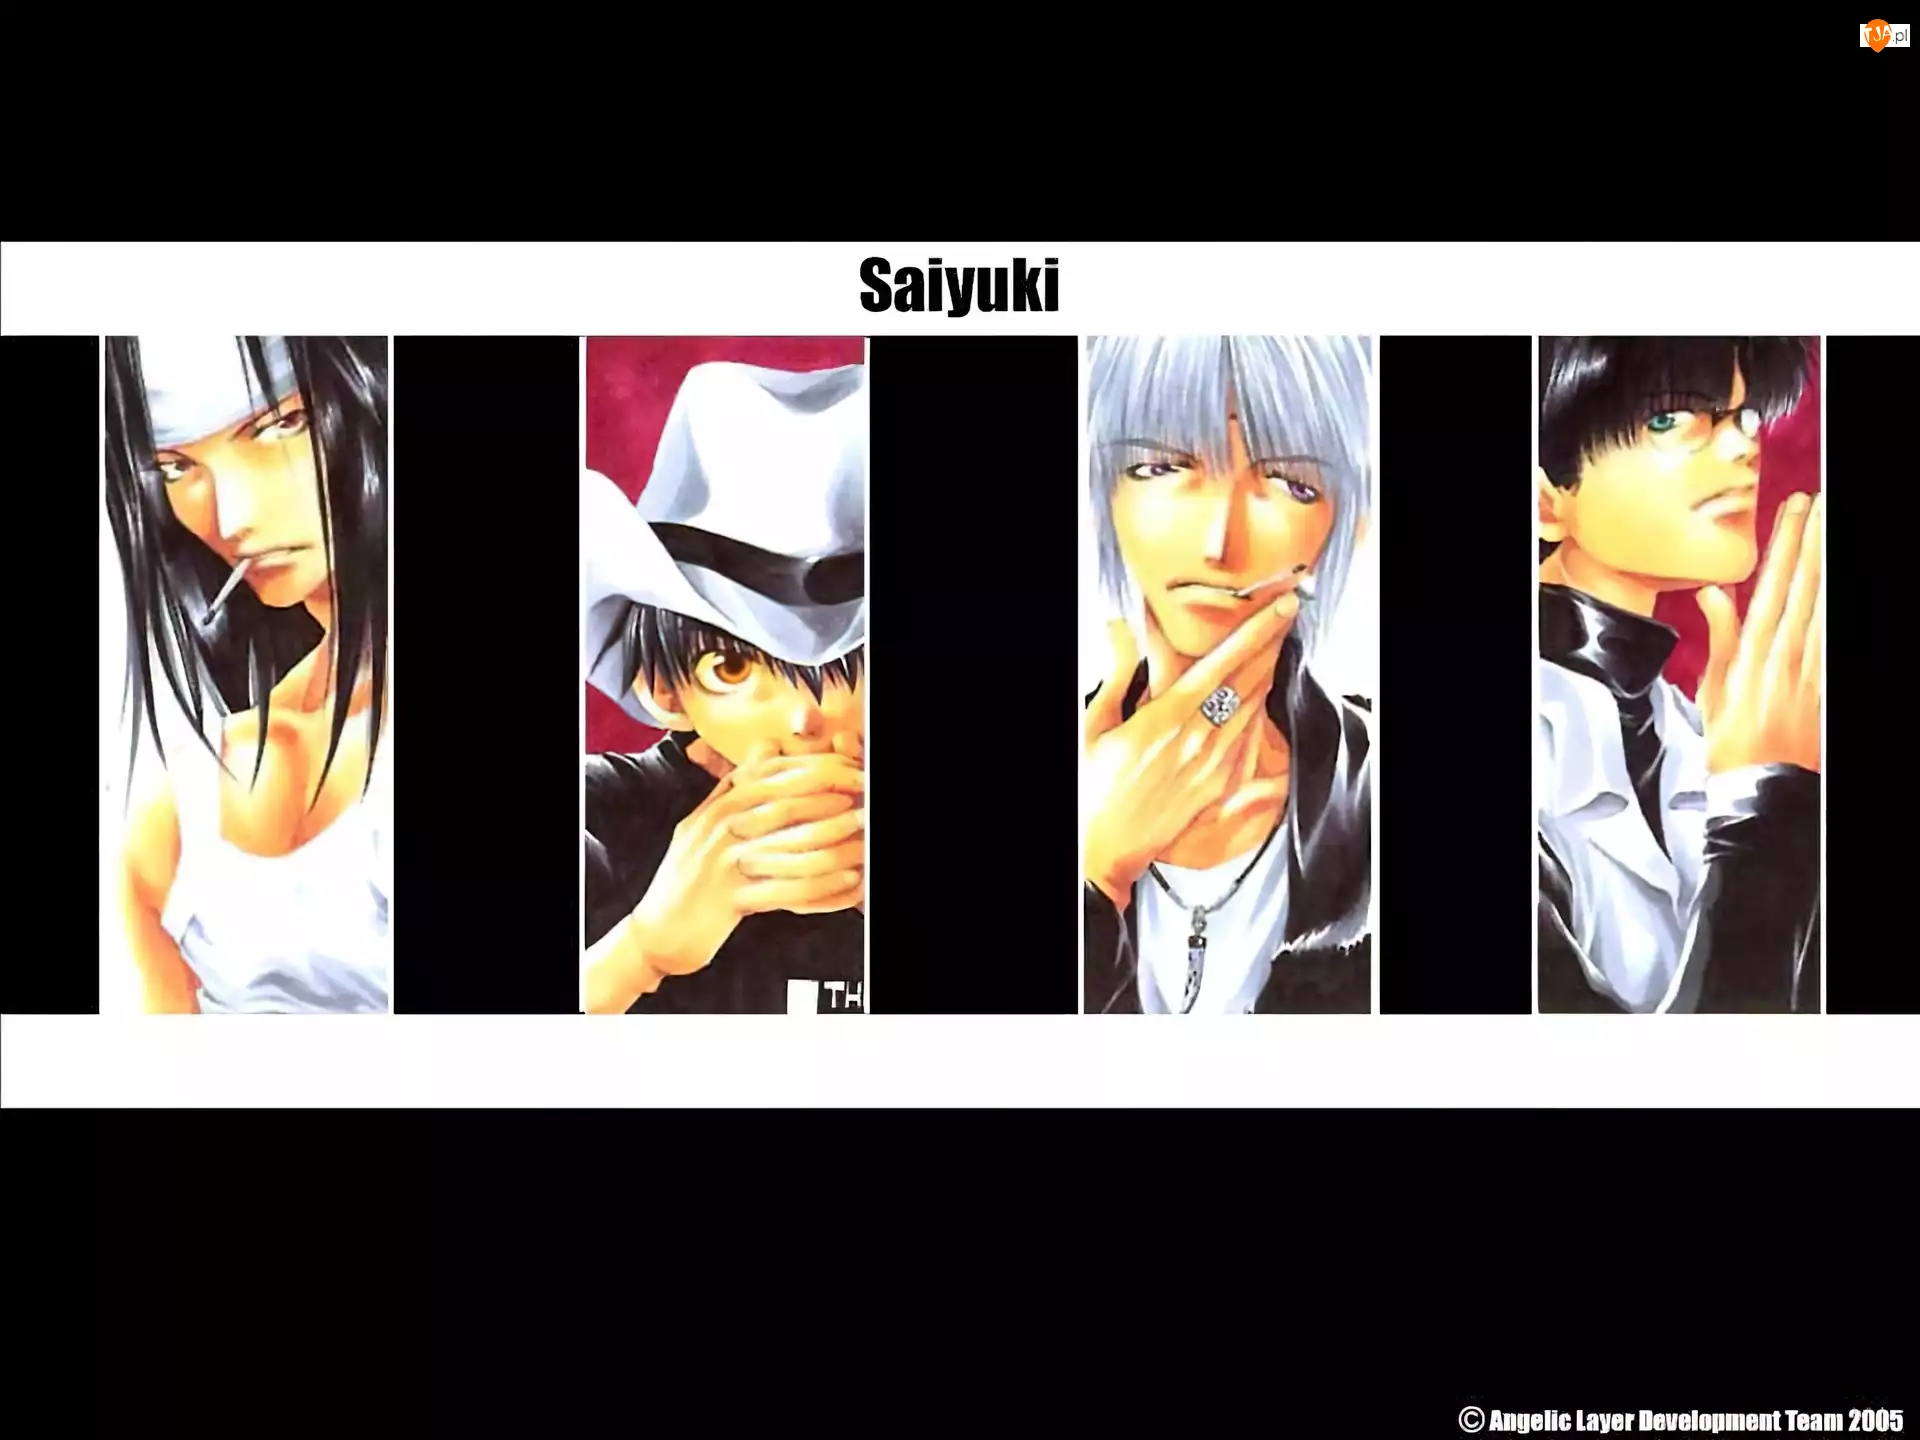 grupa, Saiyuki, papieros, kapelusz